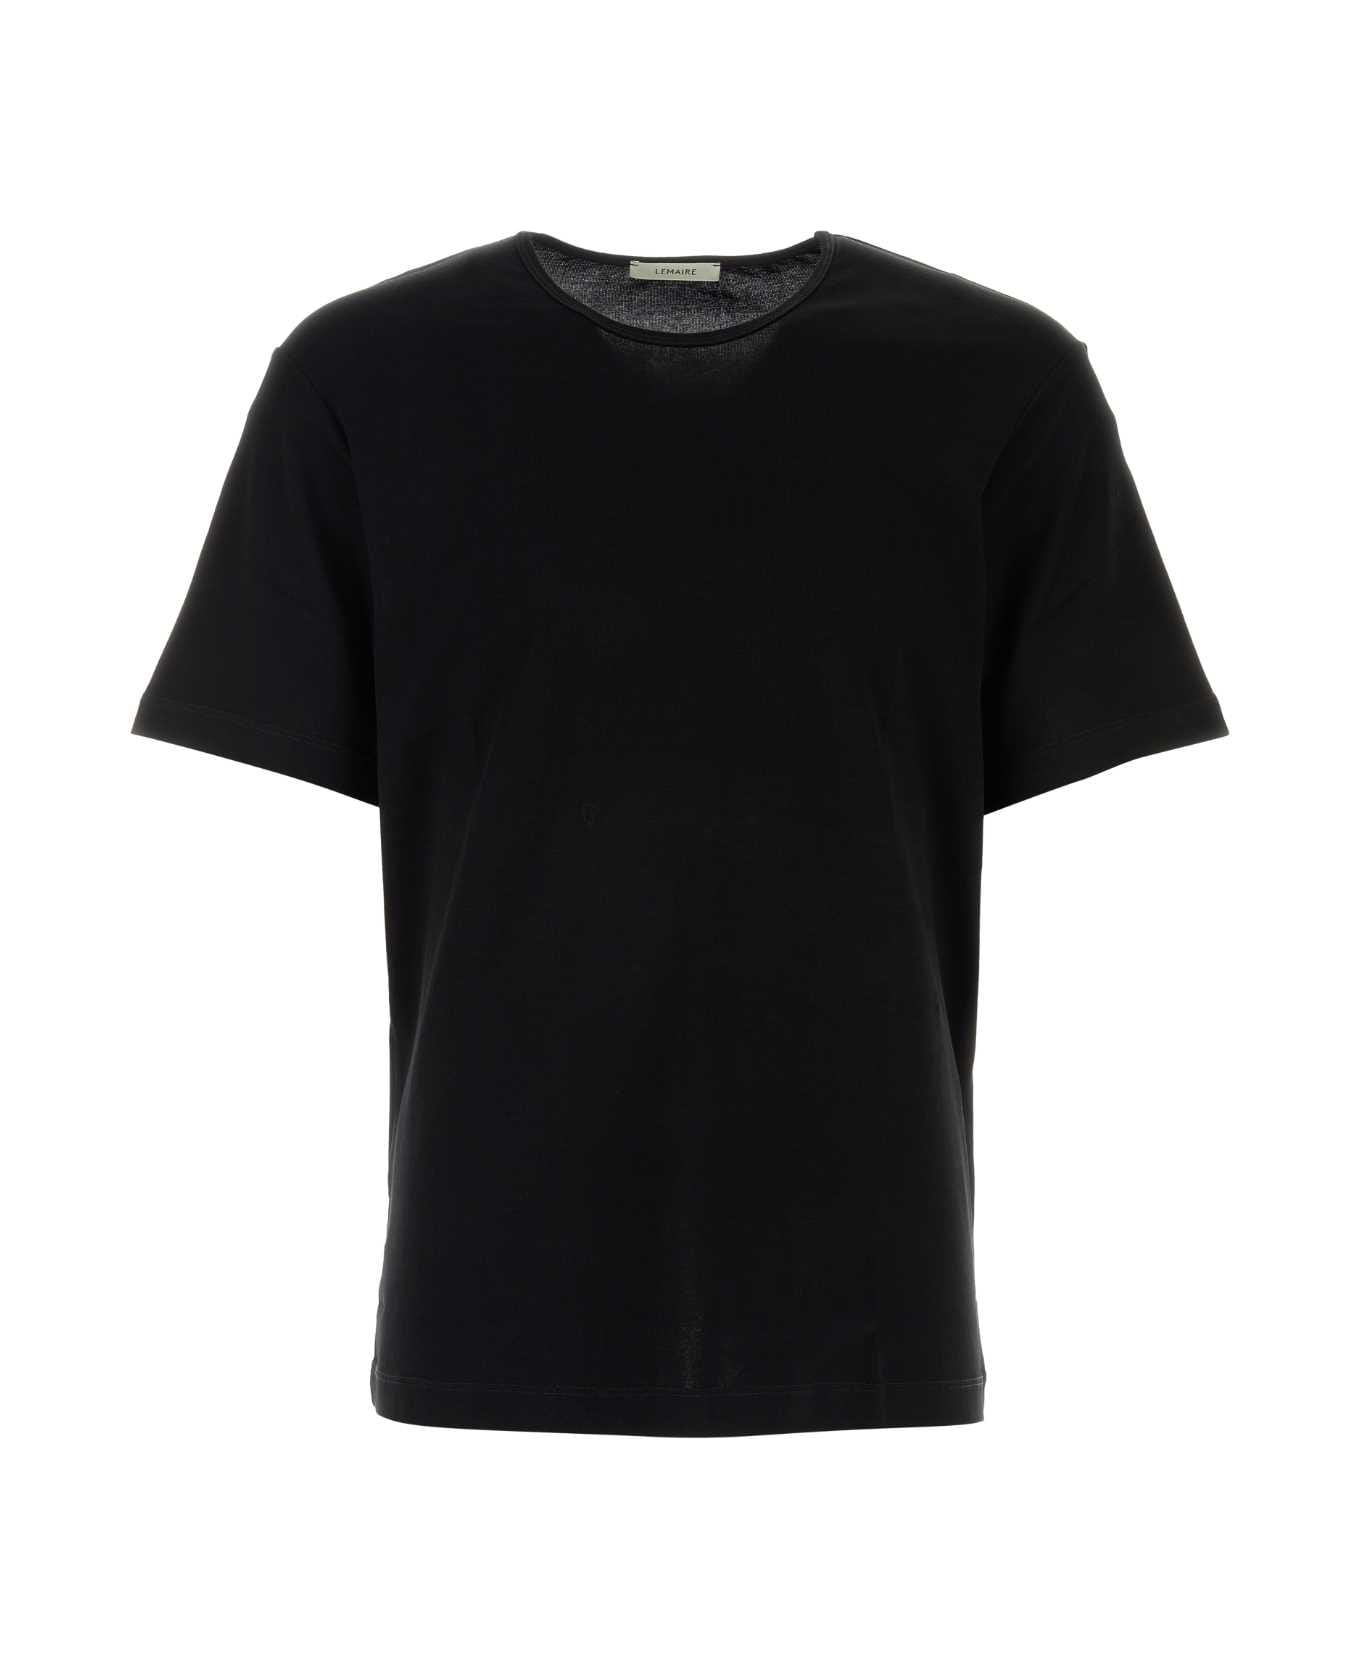 Lemaire Black Cotton T-shirt - BLACK シャツ